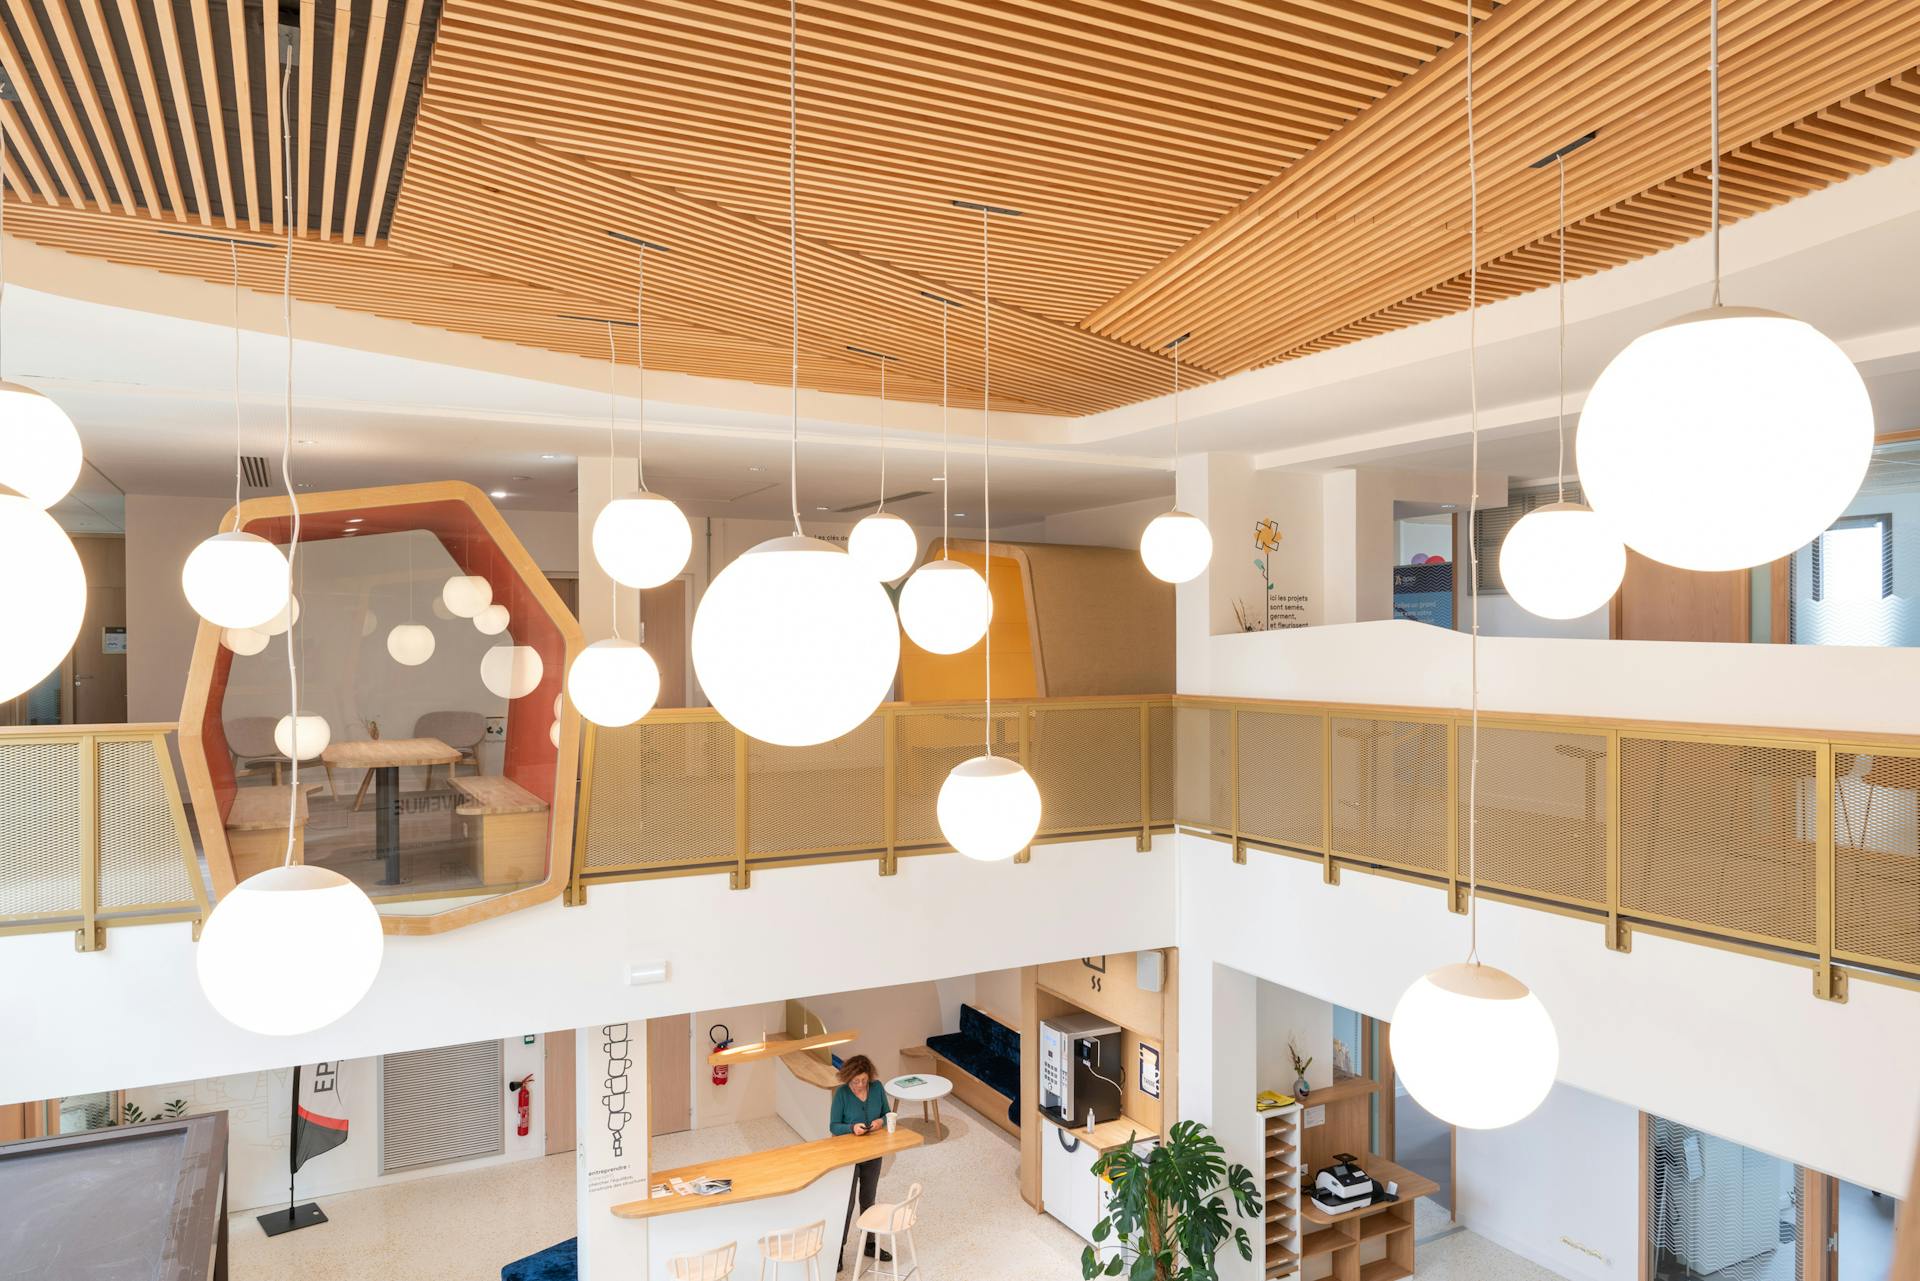 Le premier étage de la nouvelle Maison de l'Entreprise à Saint-Nazaire, dont l'aménagement d'intérieur a été réalisé par Studio Katra. On y voit une cabine d'isolation dédiée aux réunions, ainsi que de nombreux luminaires.